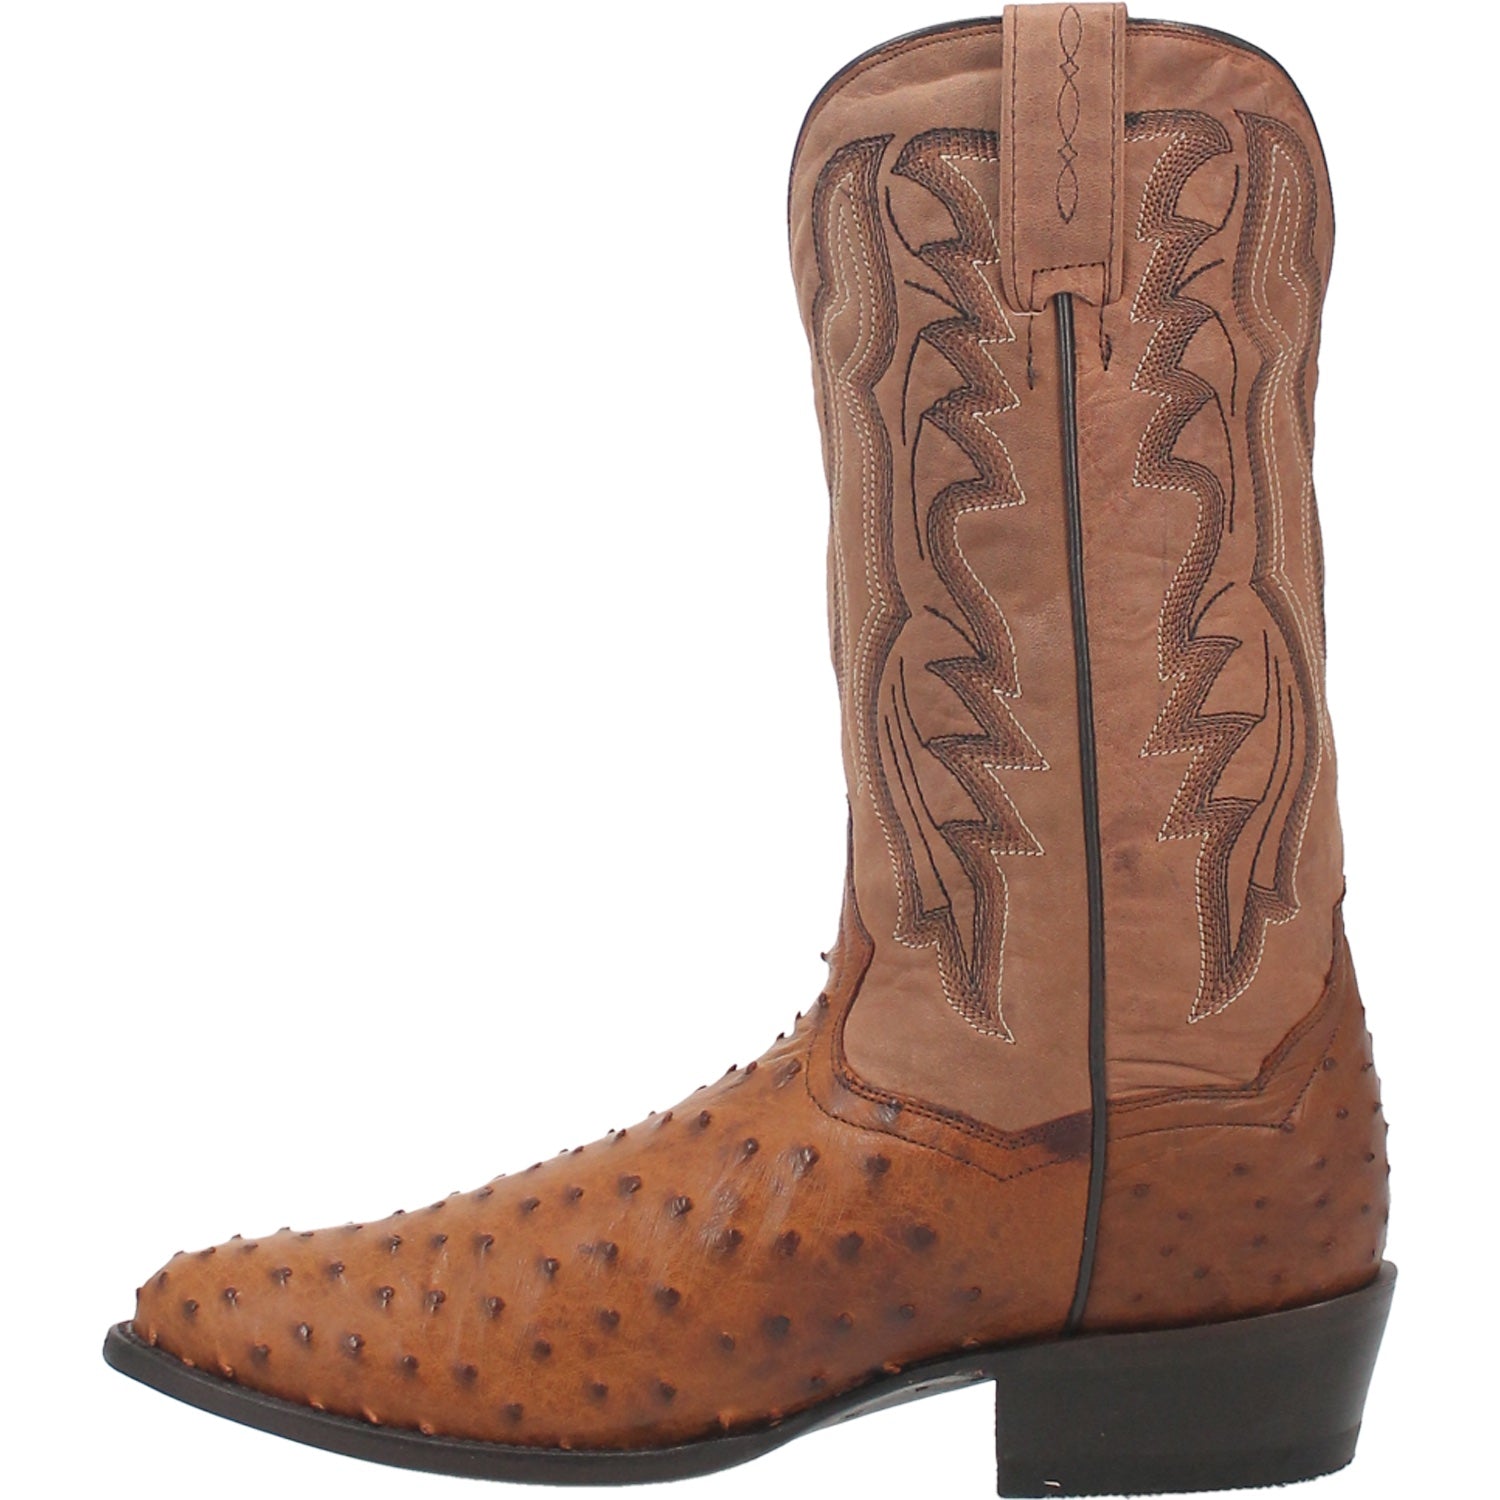 dan post ostrich cowboy boots